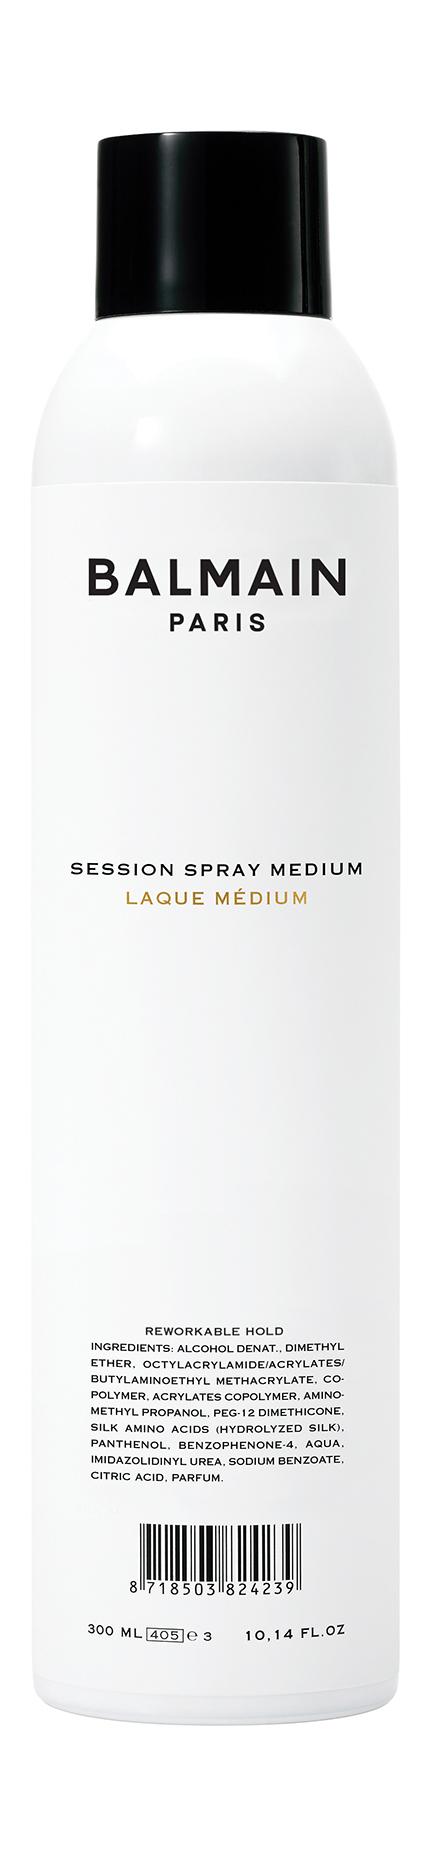 Session Spray Medium